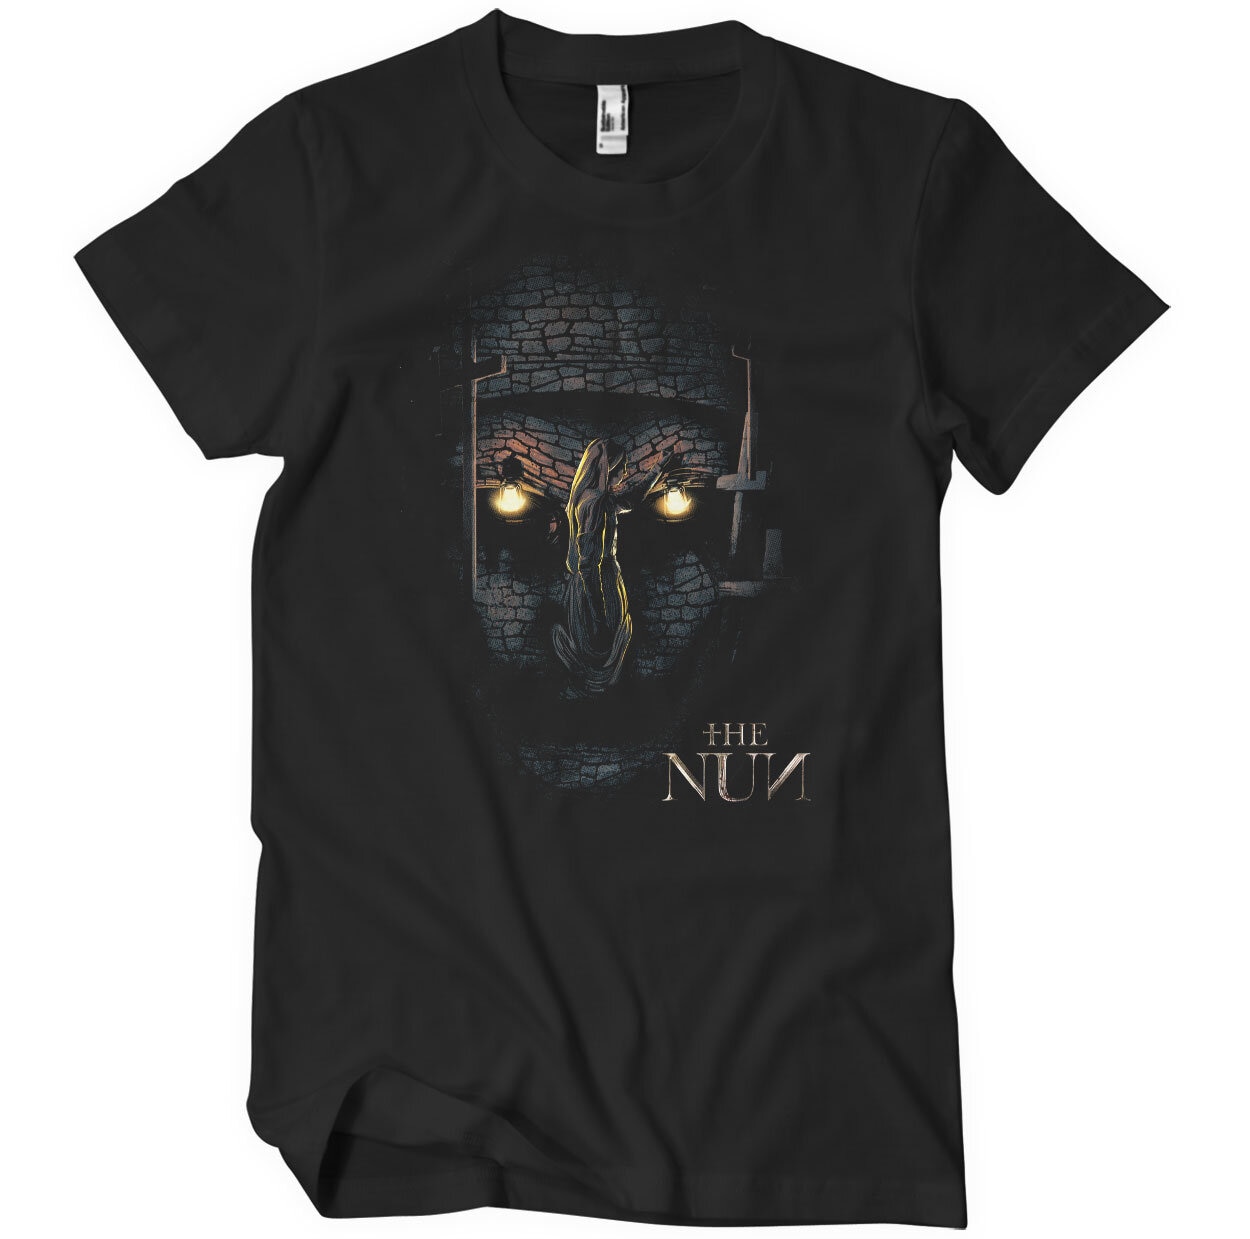 The NUN T-Shirt